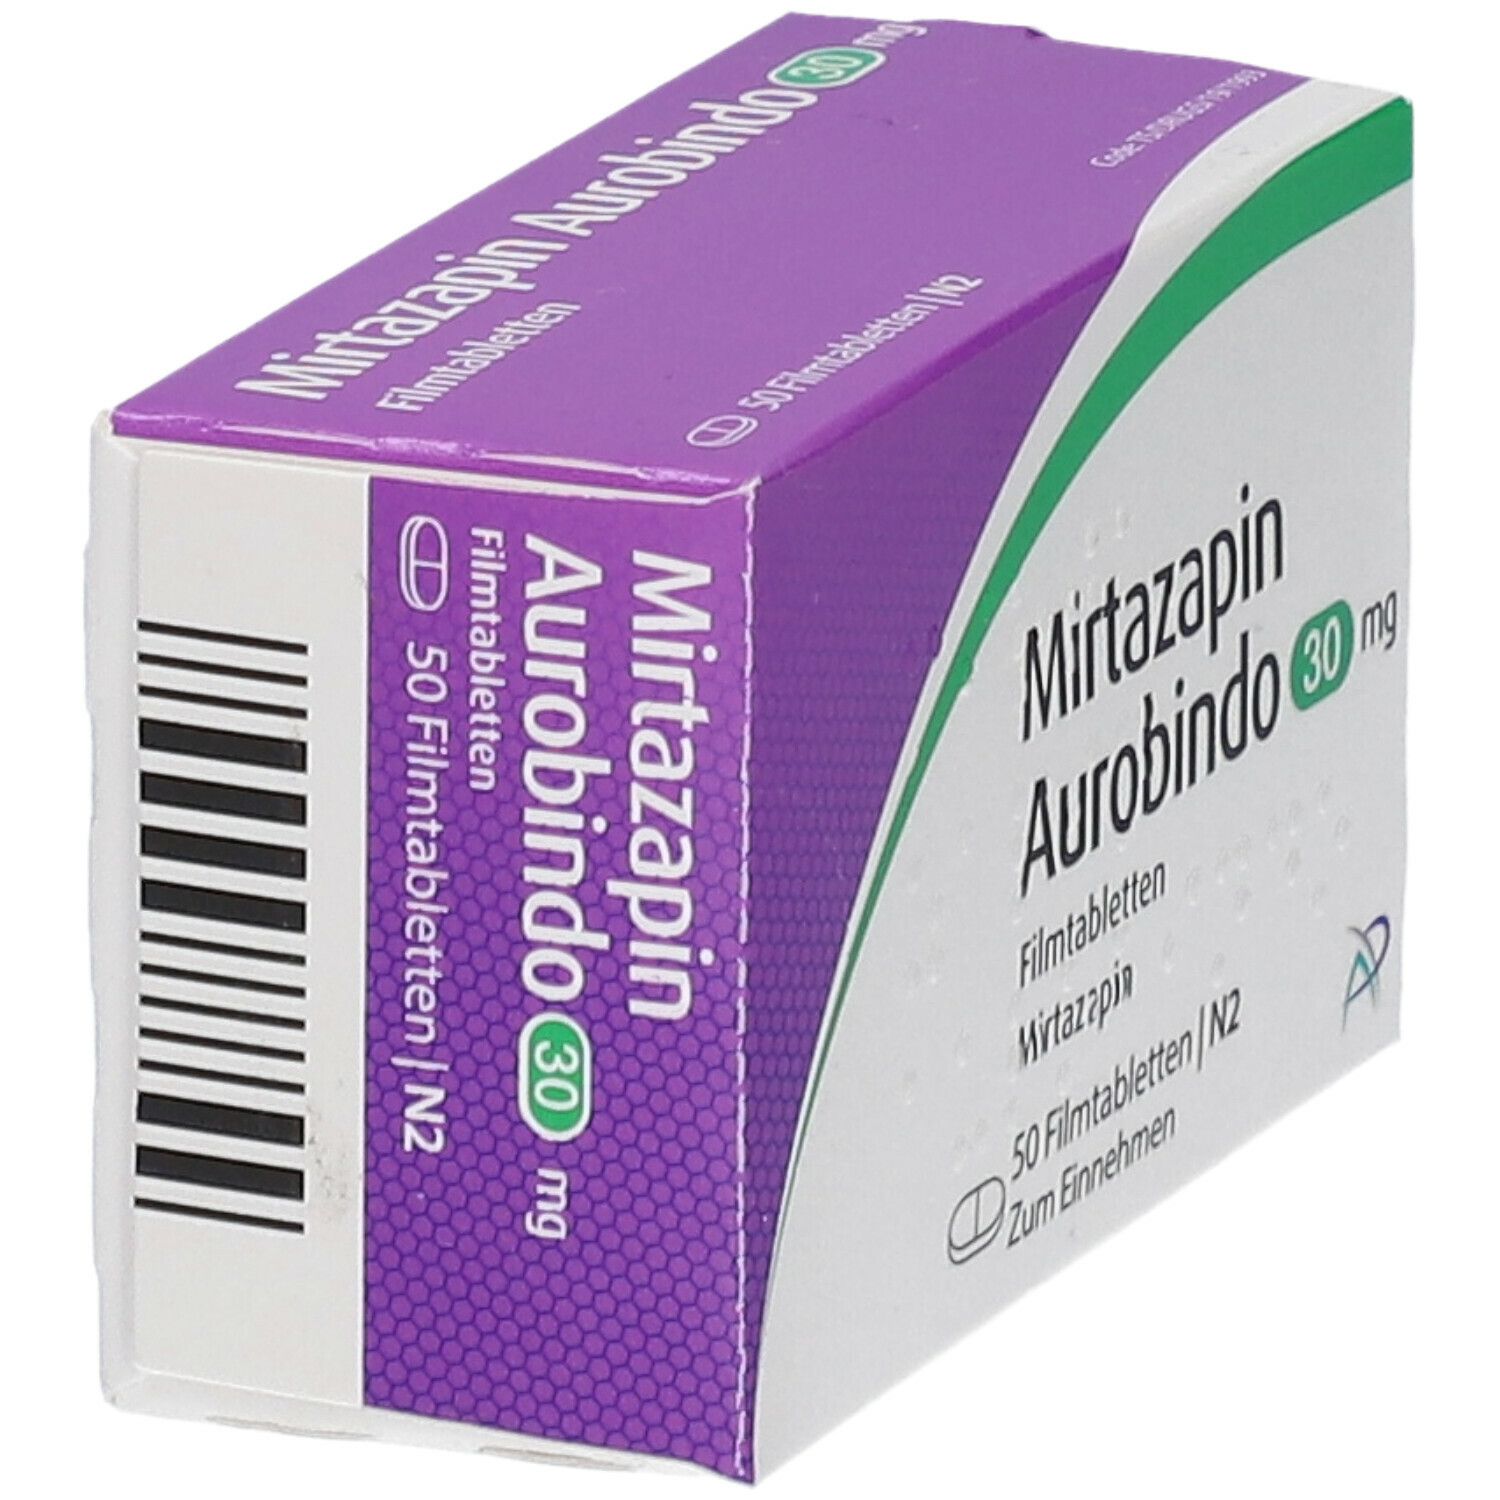 Mirtazapin Aurobindo 30 mg